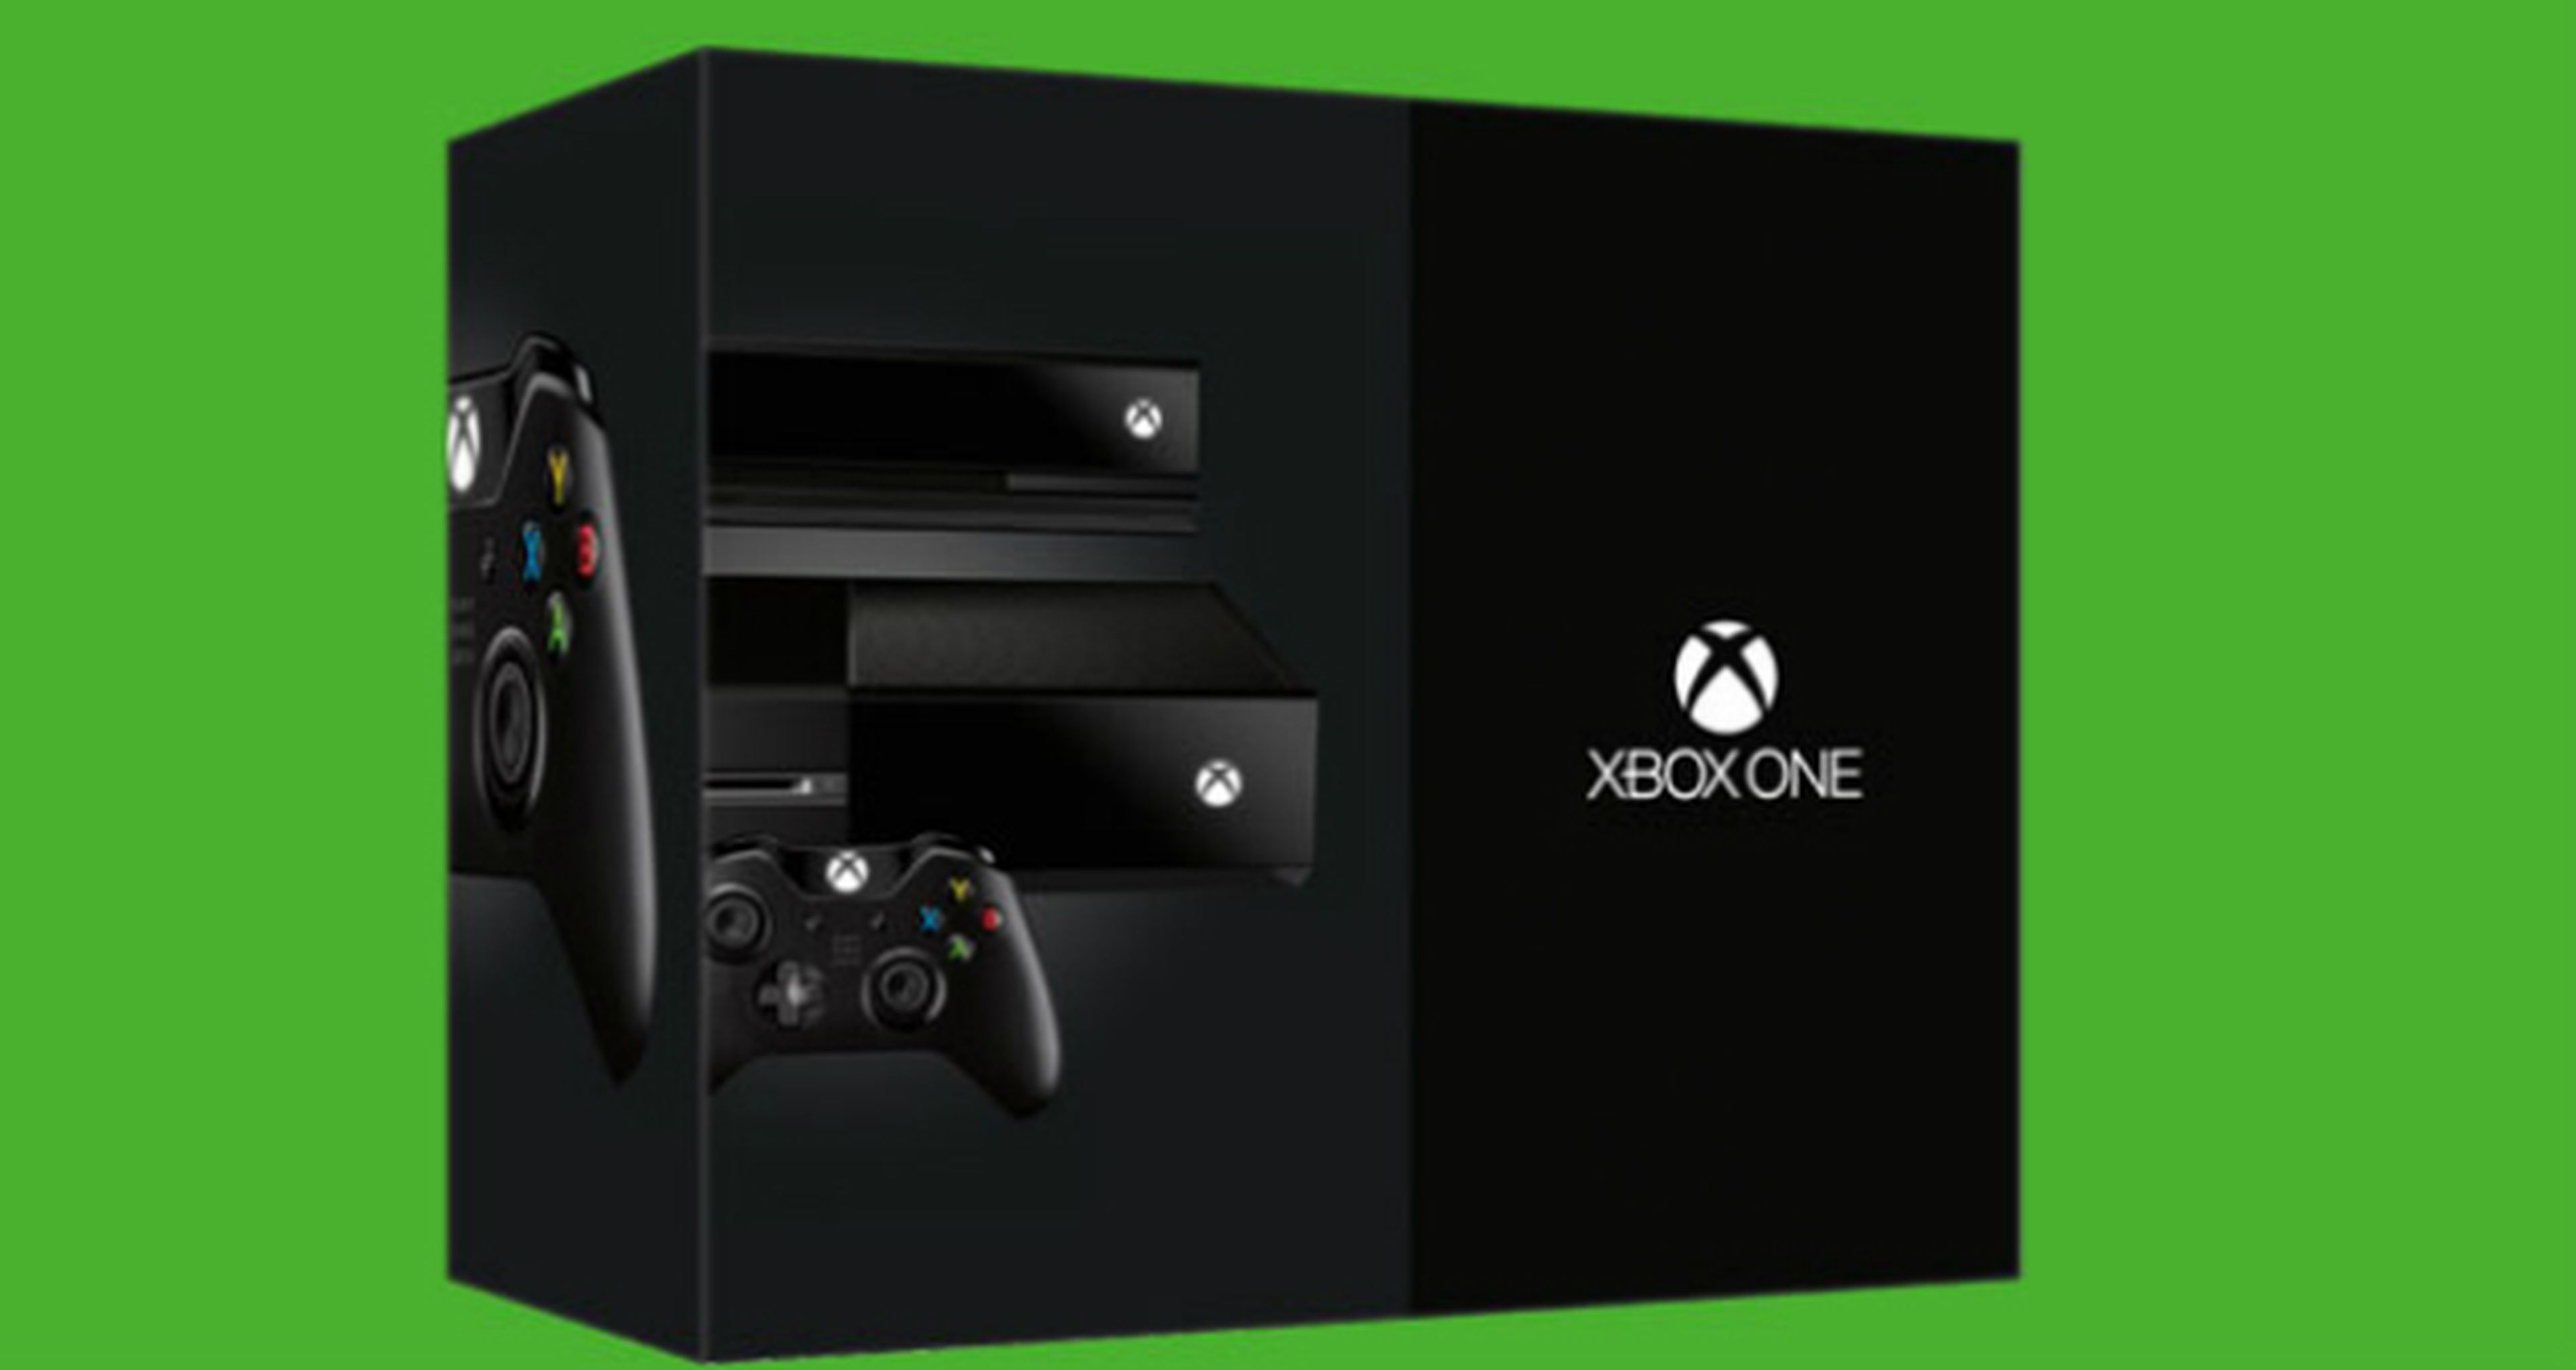 Las cinco razones para comprar Xbox One según Forbes